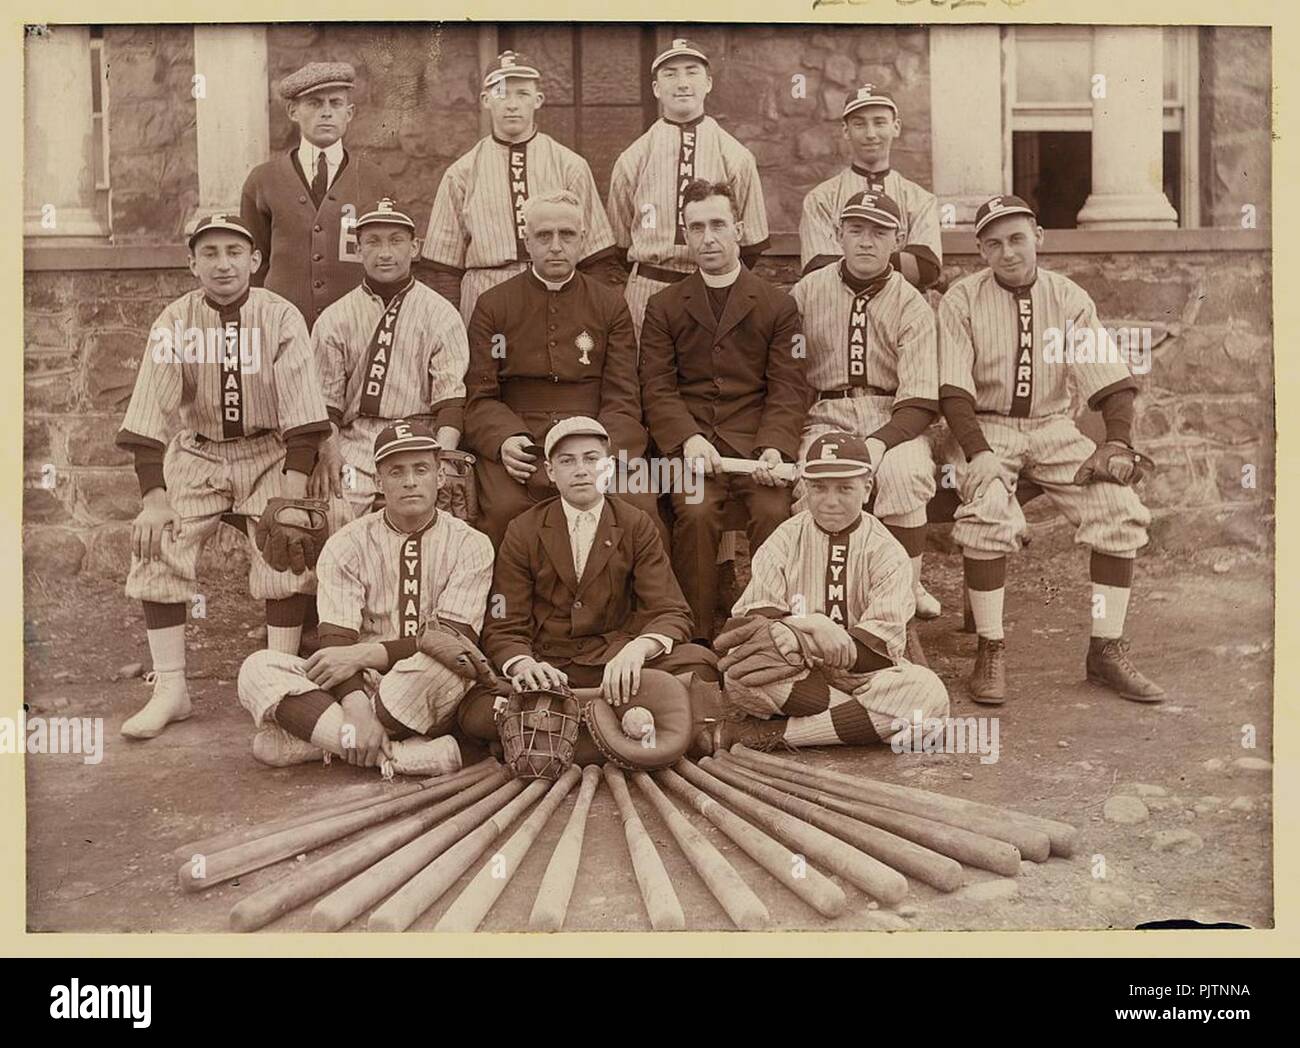 Baseball team, Eymard Seminary, Suffern, N.Y. Stock Photo